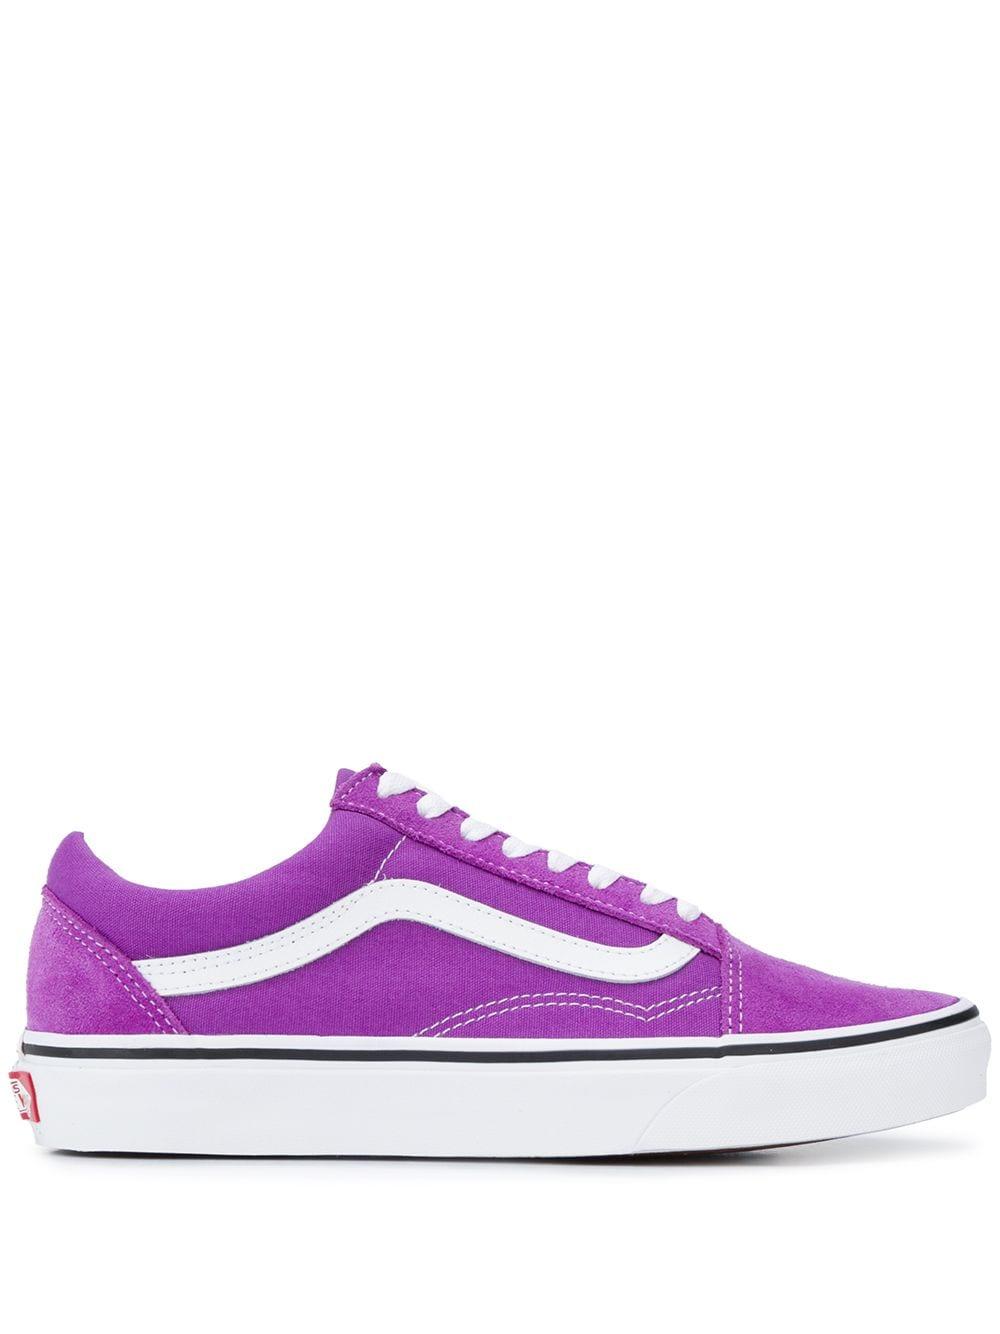 purple vans low